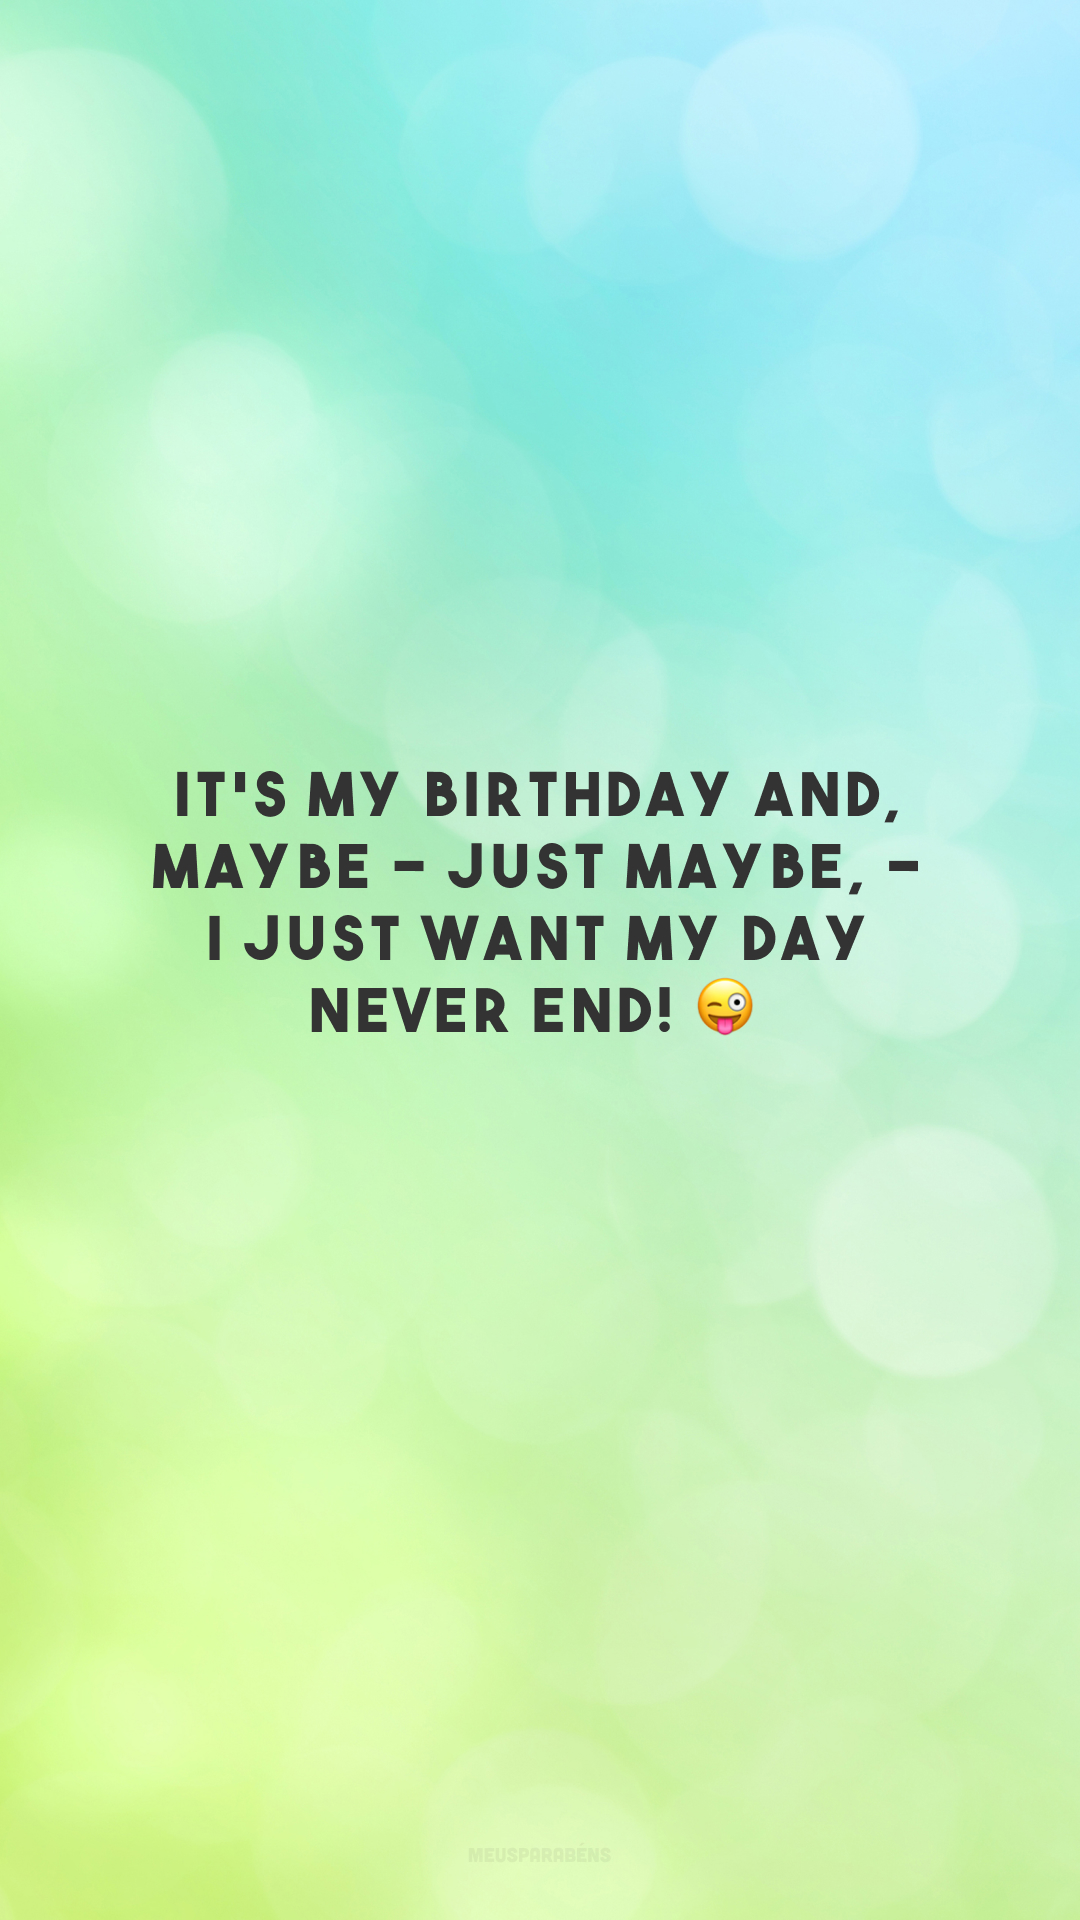 It's my birthday and, maybe - just maybe, - I just want my day never end! 😜

<p>(É meu aniversário e, talvez - apenas talvez -, eu só queira que meu dia nunca termine!)<p>